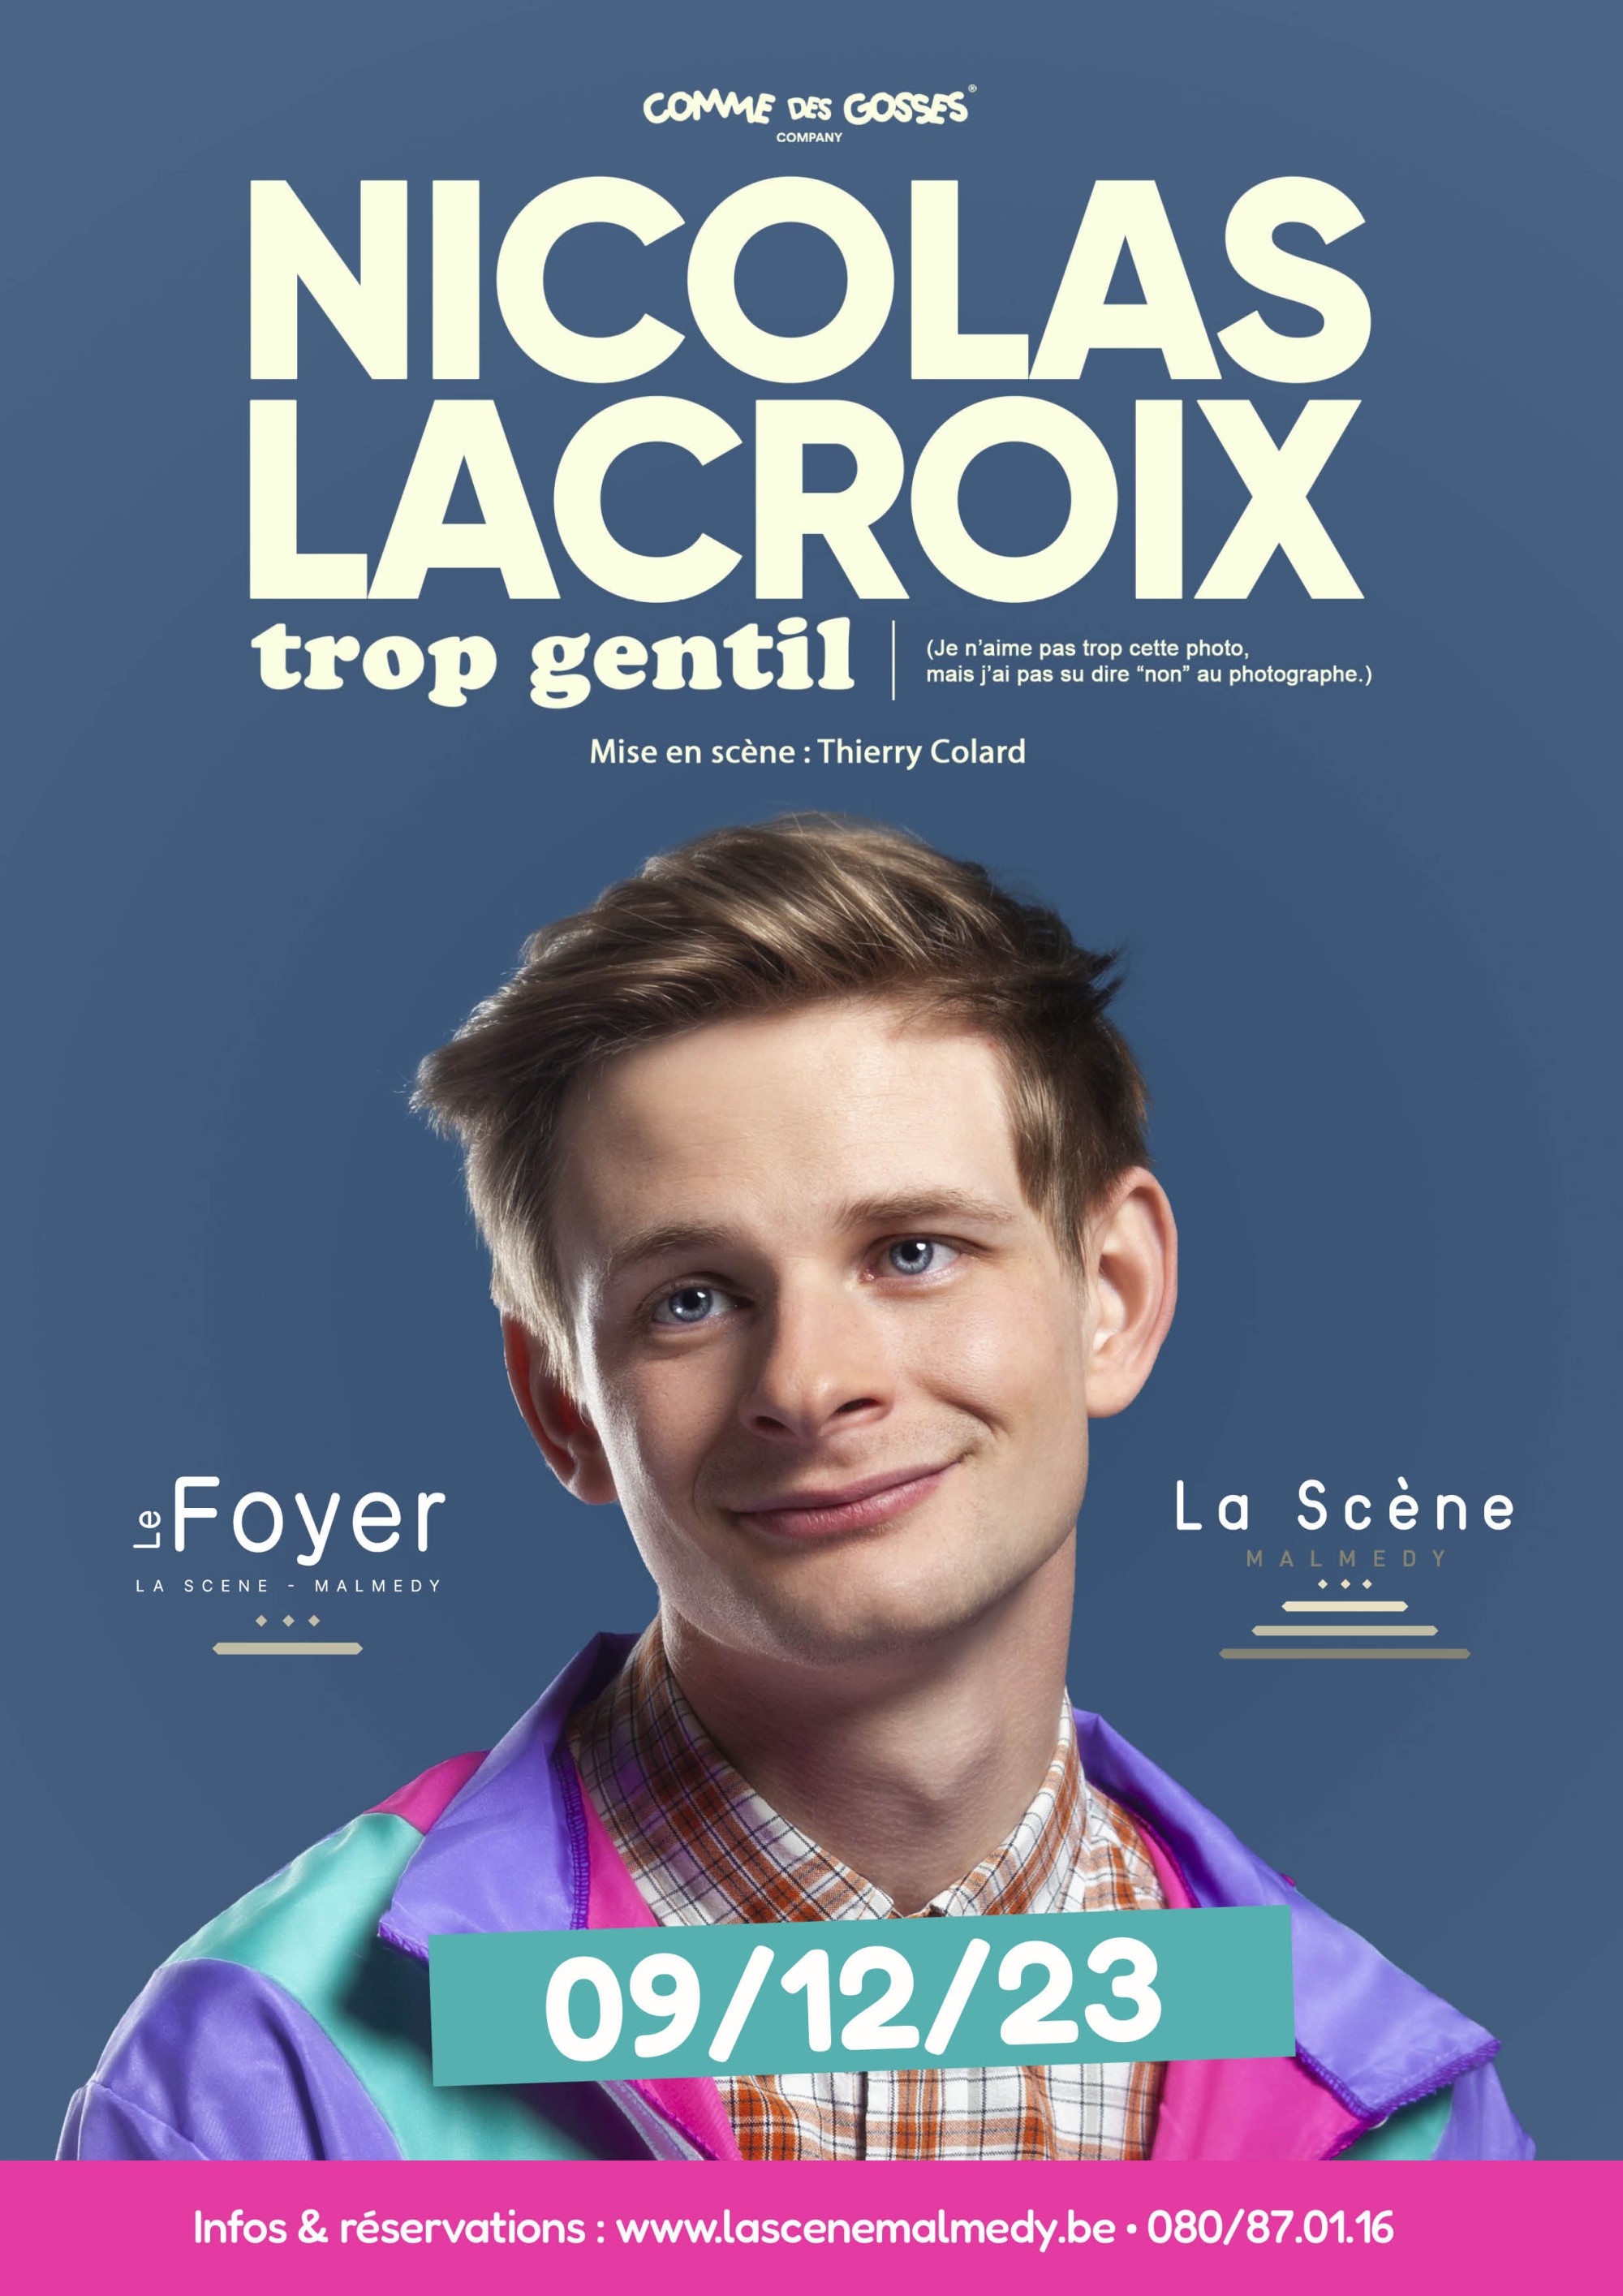 Nicolas Lacroix – Trop gentil